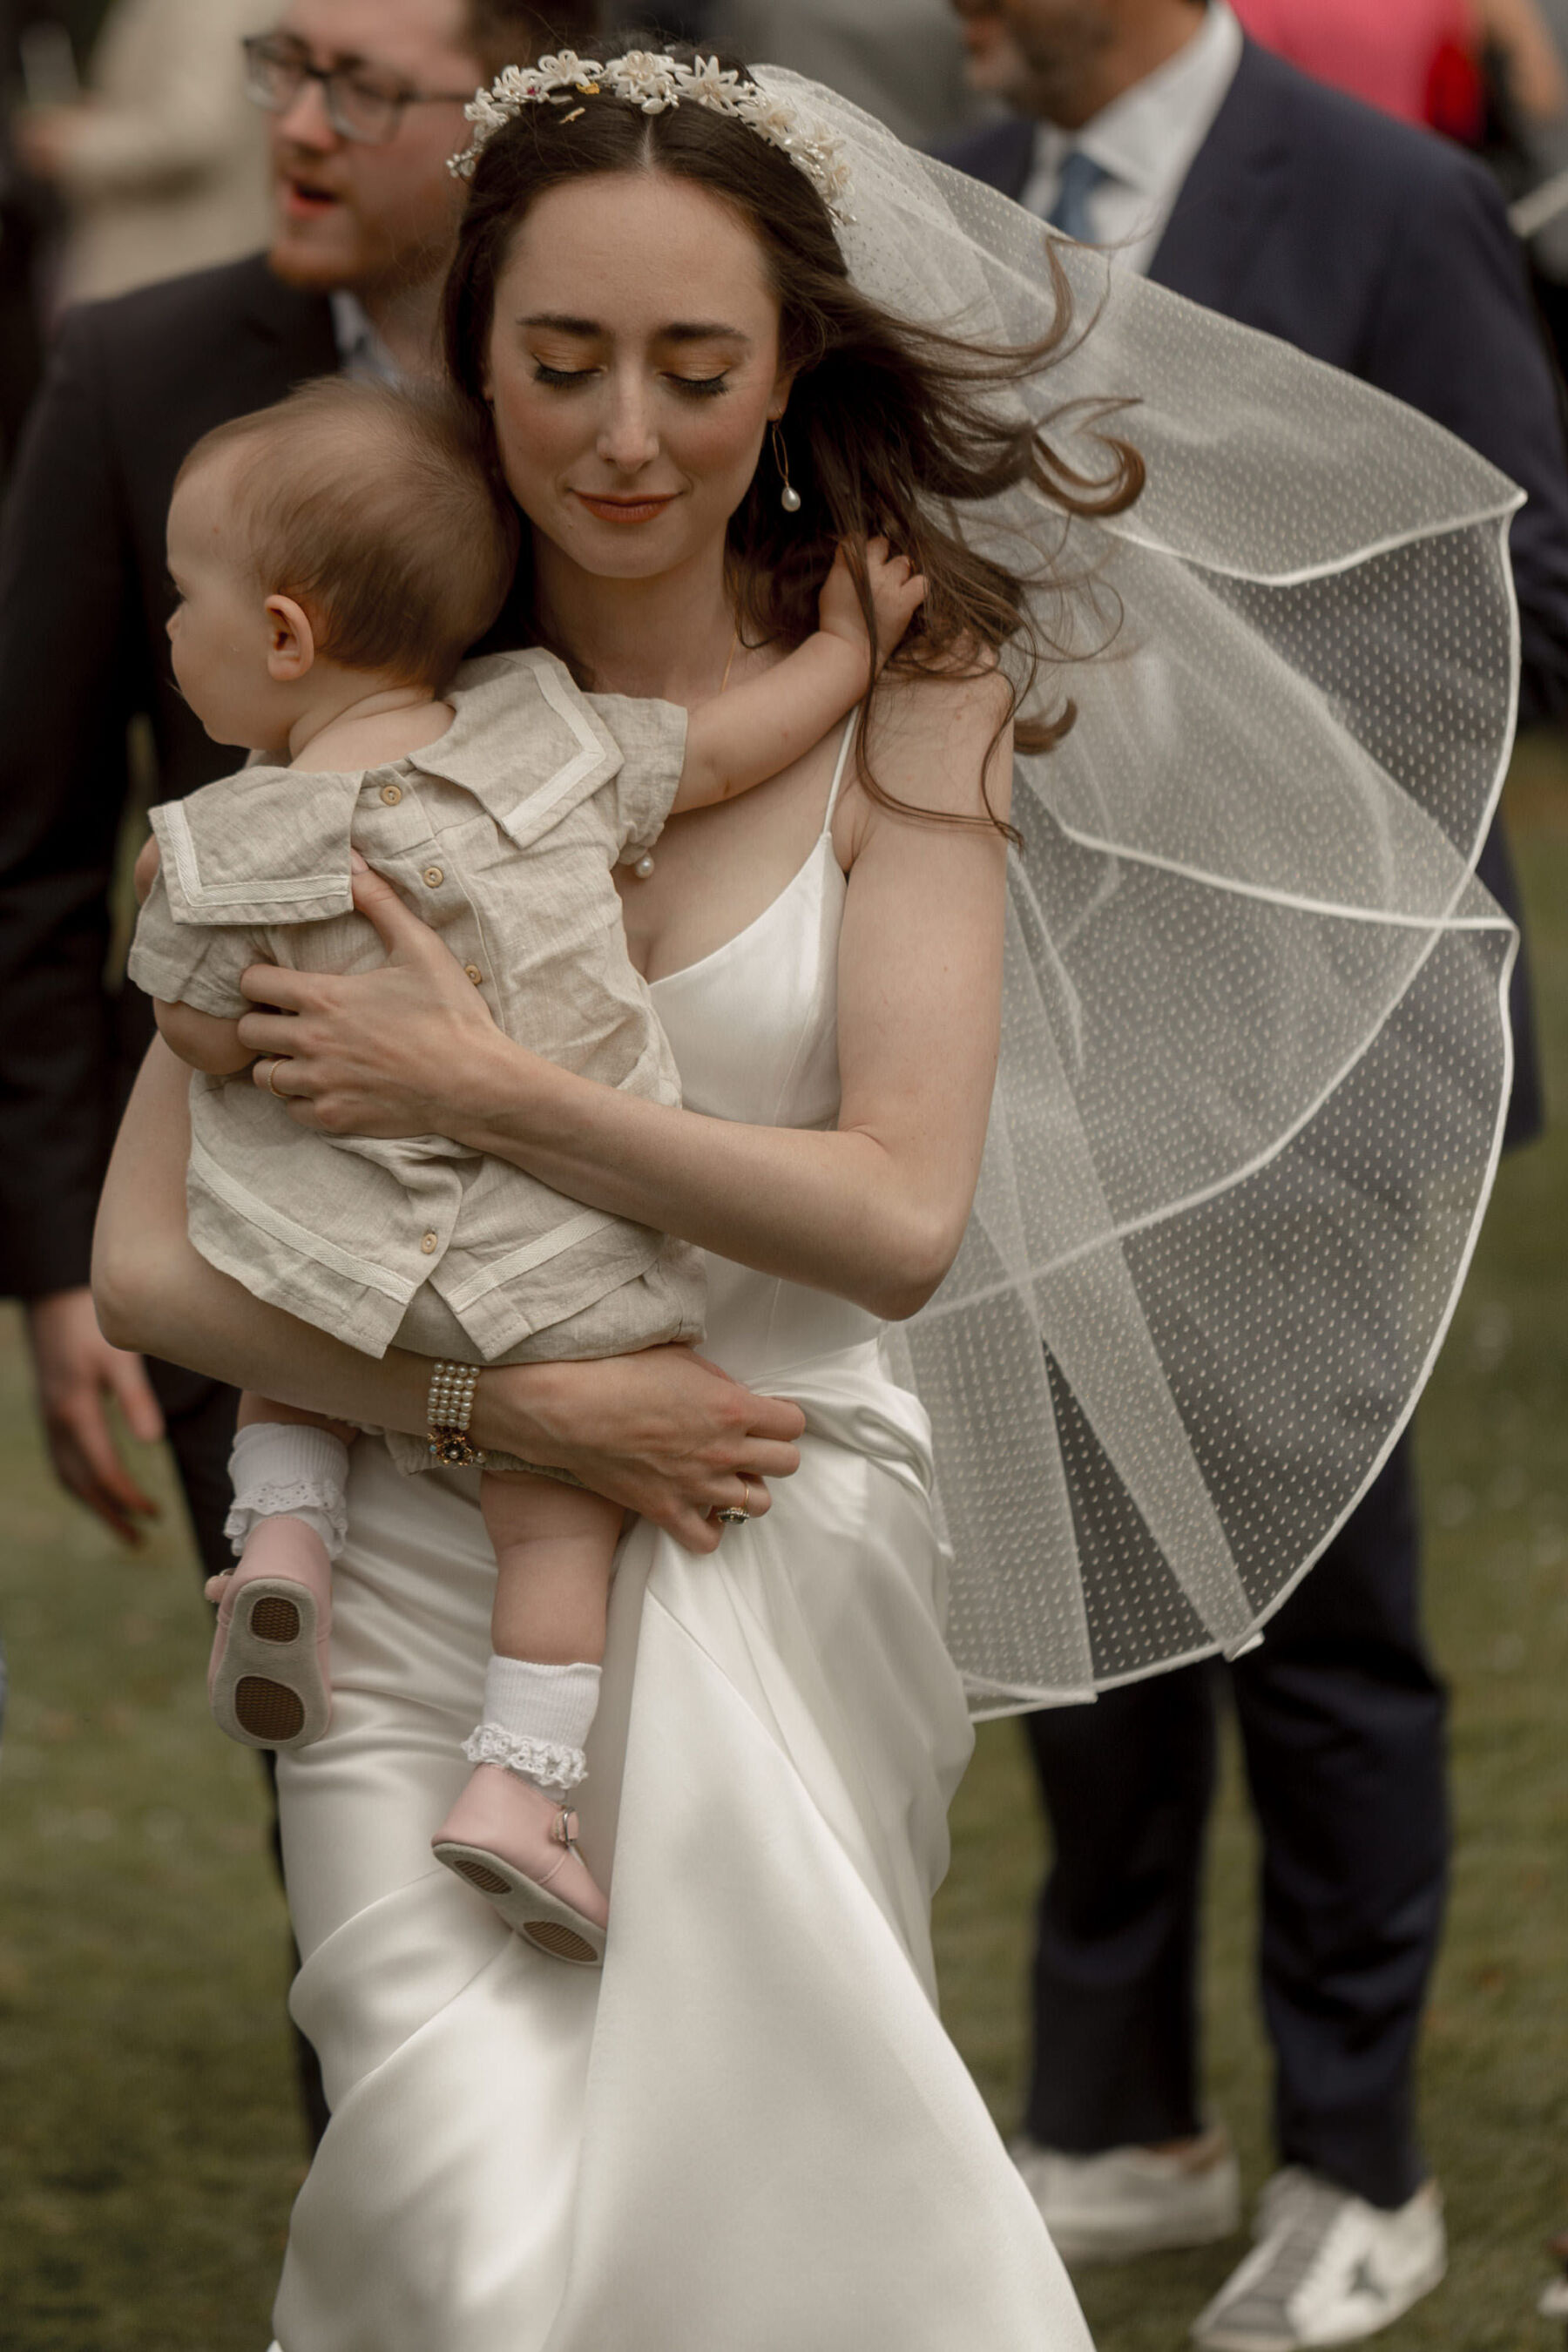 Bride in Galvan wedding dress, polka dot veil, carrying baby flowergirl.